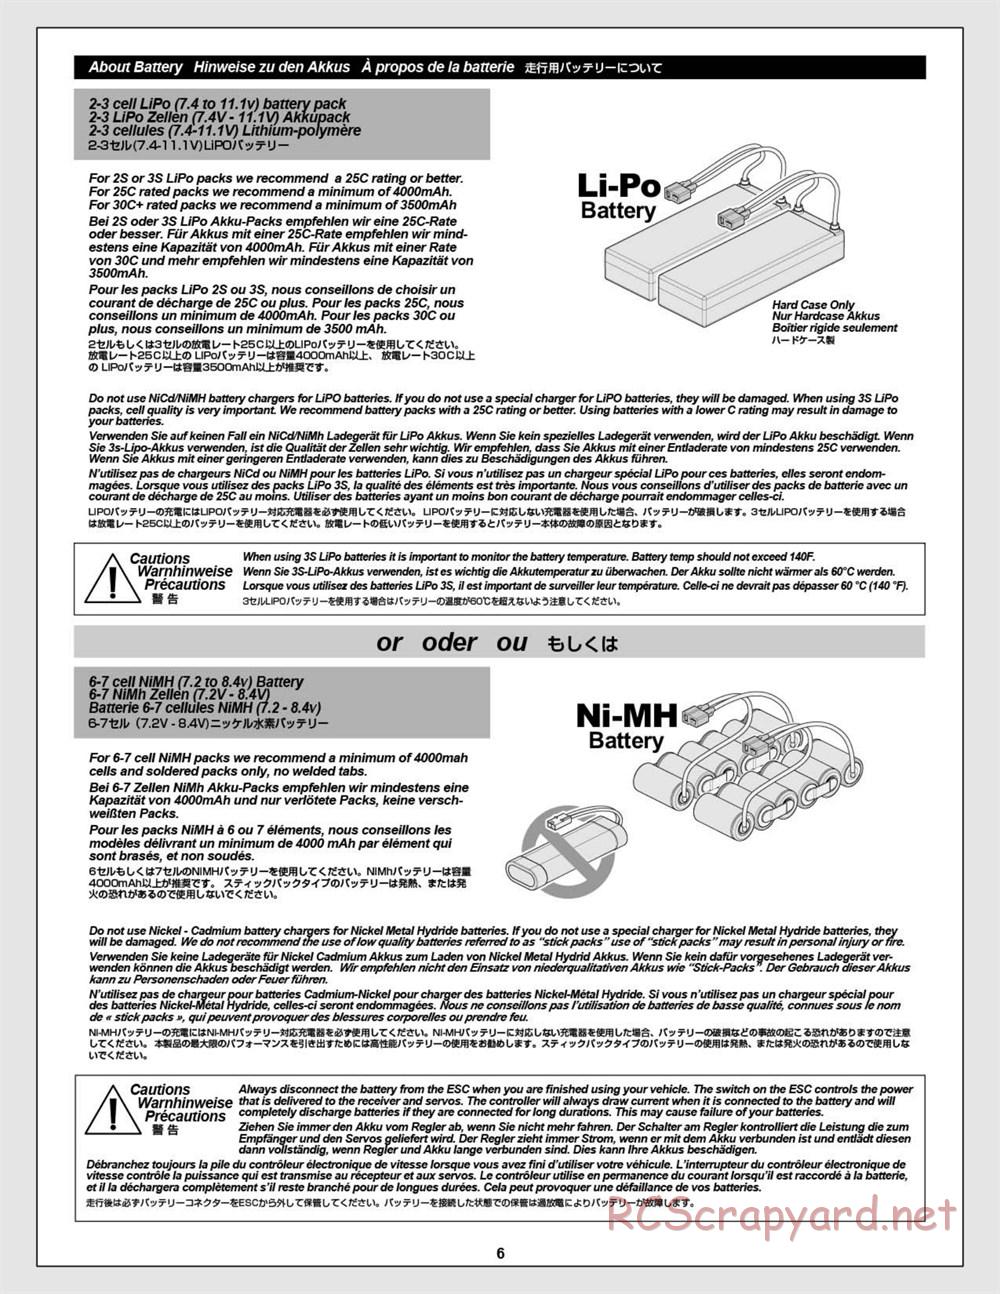 HPI - Vorza Flux HP - Manual - Page 6